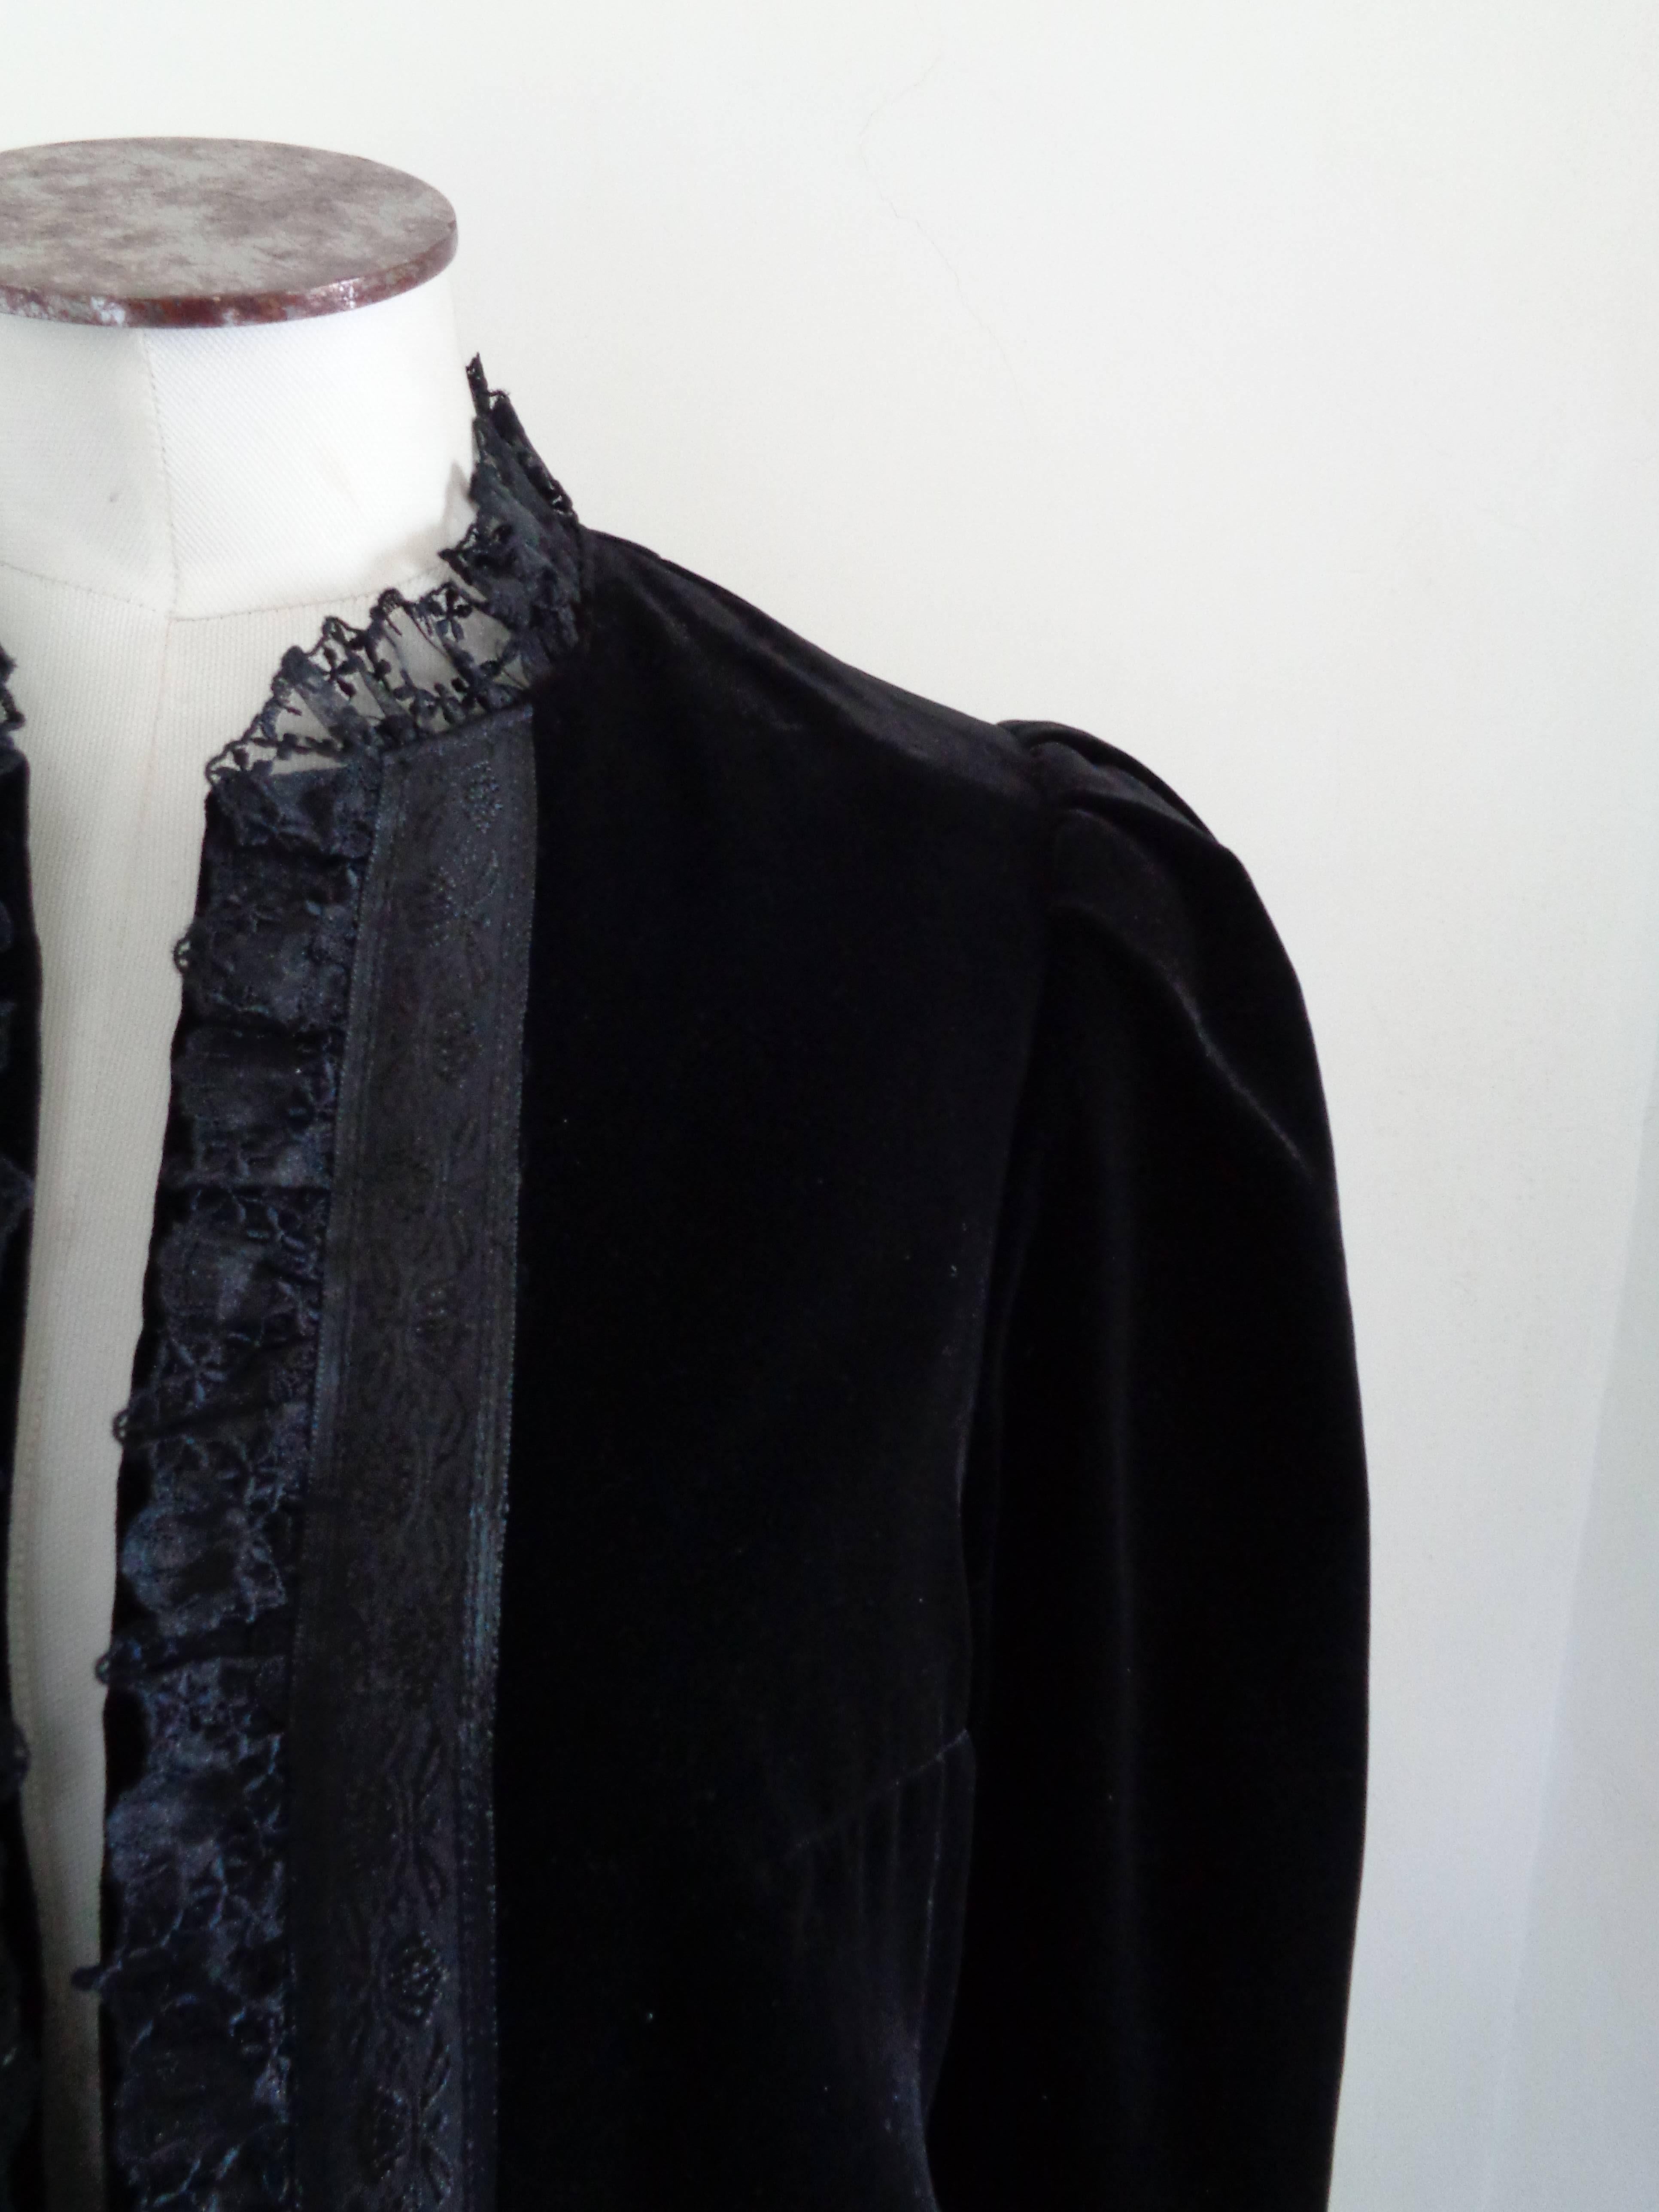 Krachten Kraft Collection Black Jacket

MAde in austria in size 38